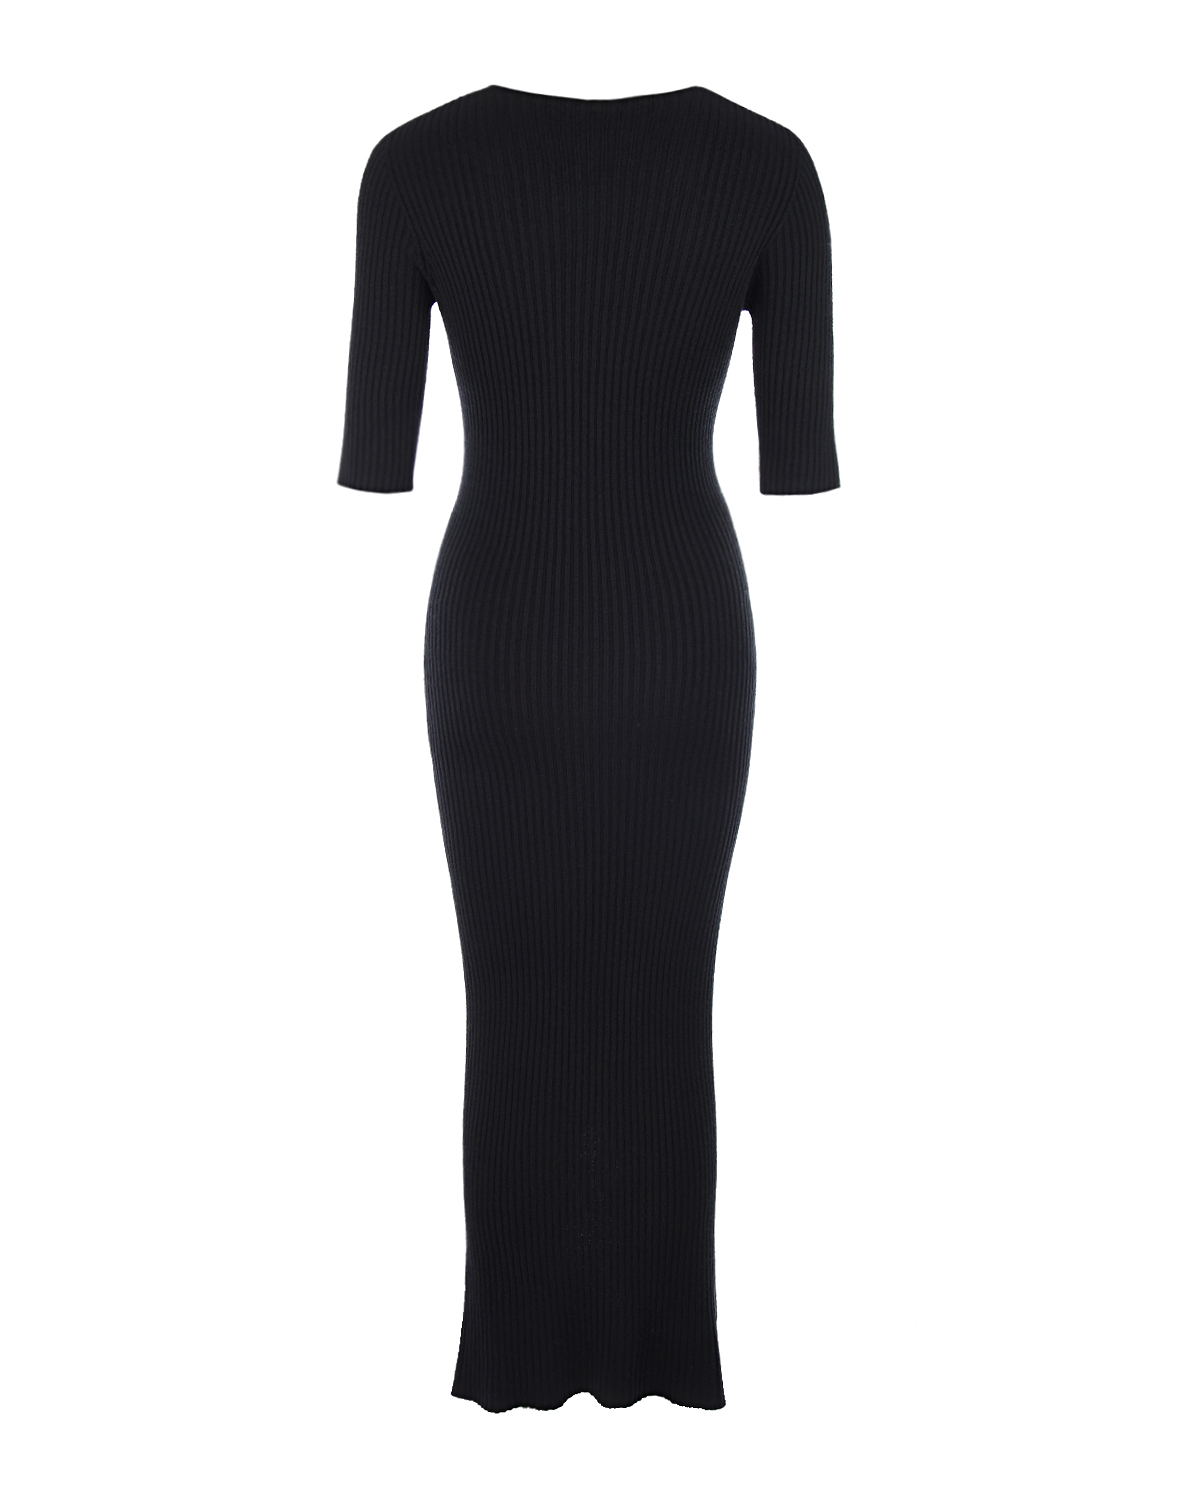 Черное трикотажное платье Bella Pietro Brunelli, размер 40, цвет черный - фото 5